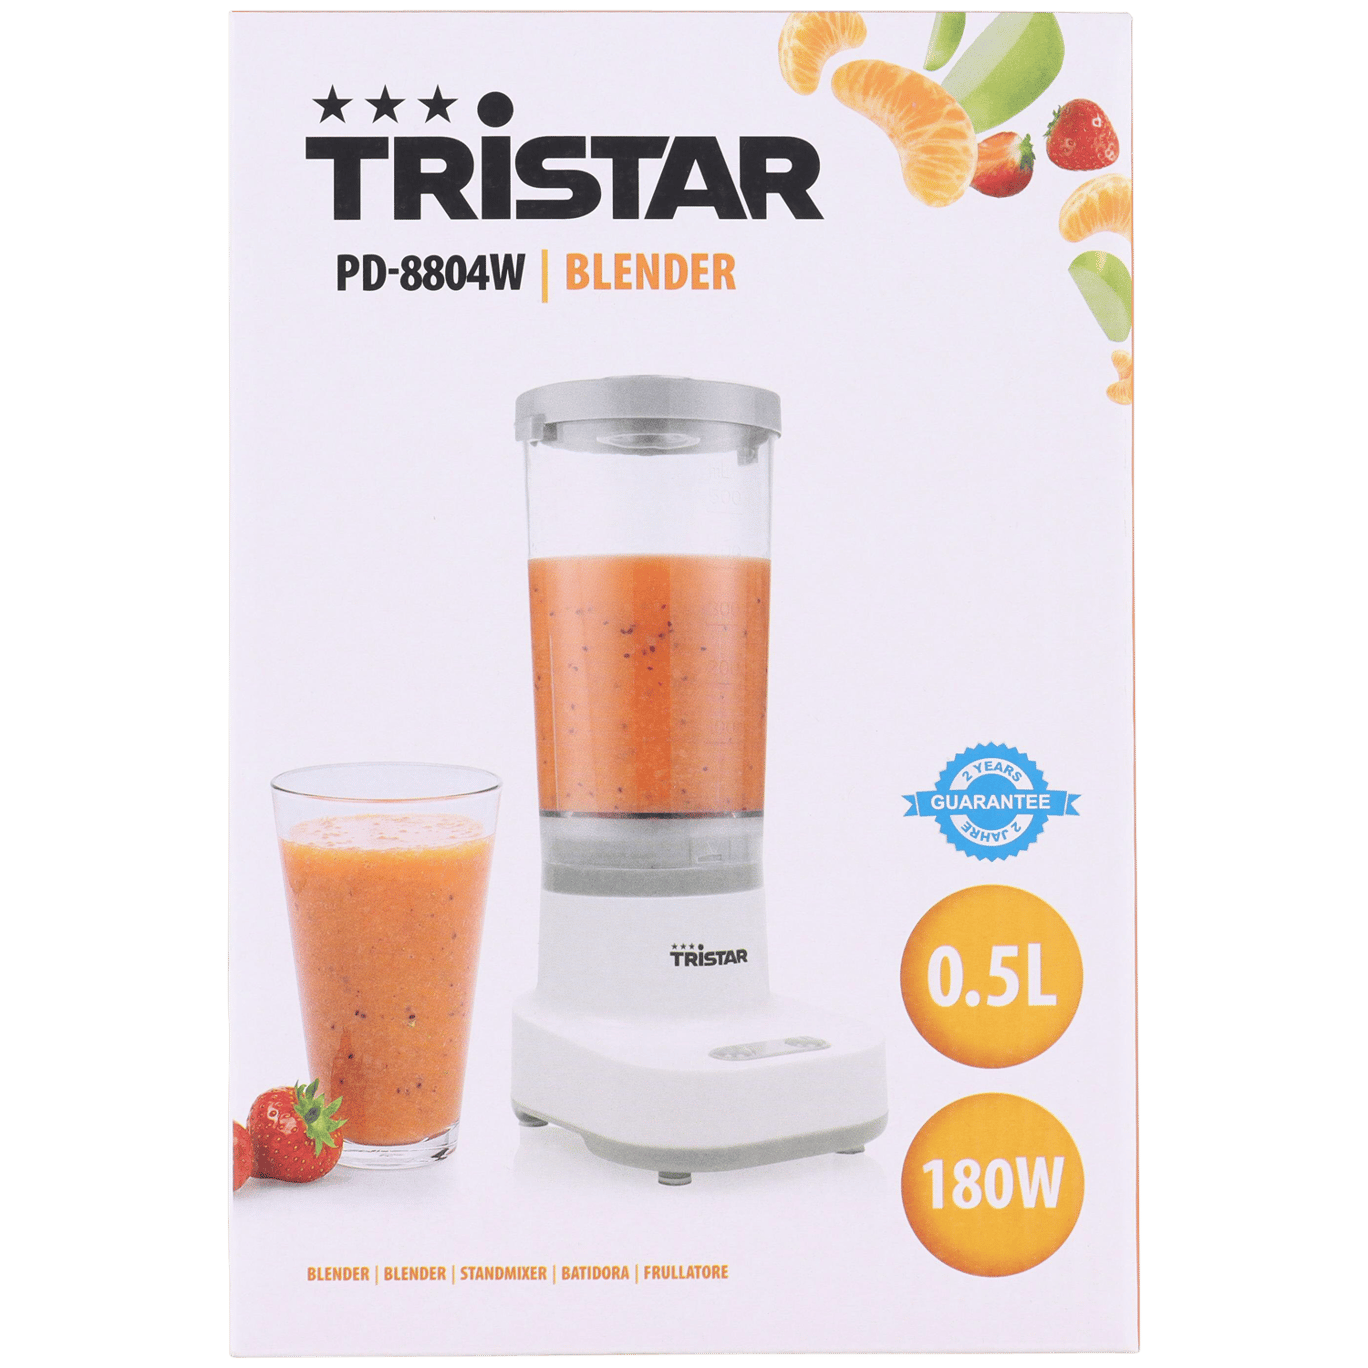 Tristar Blender Mixer